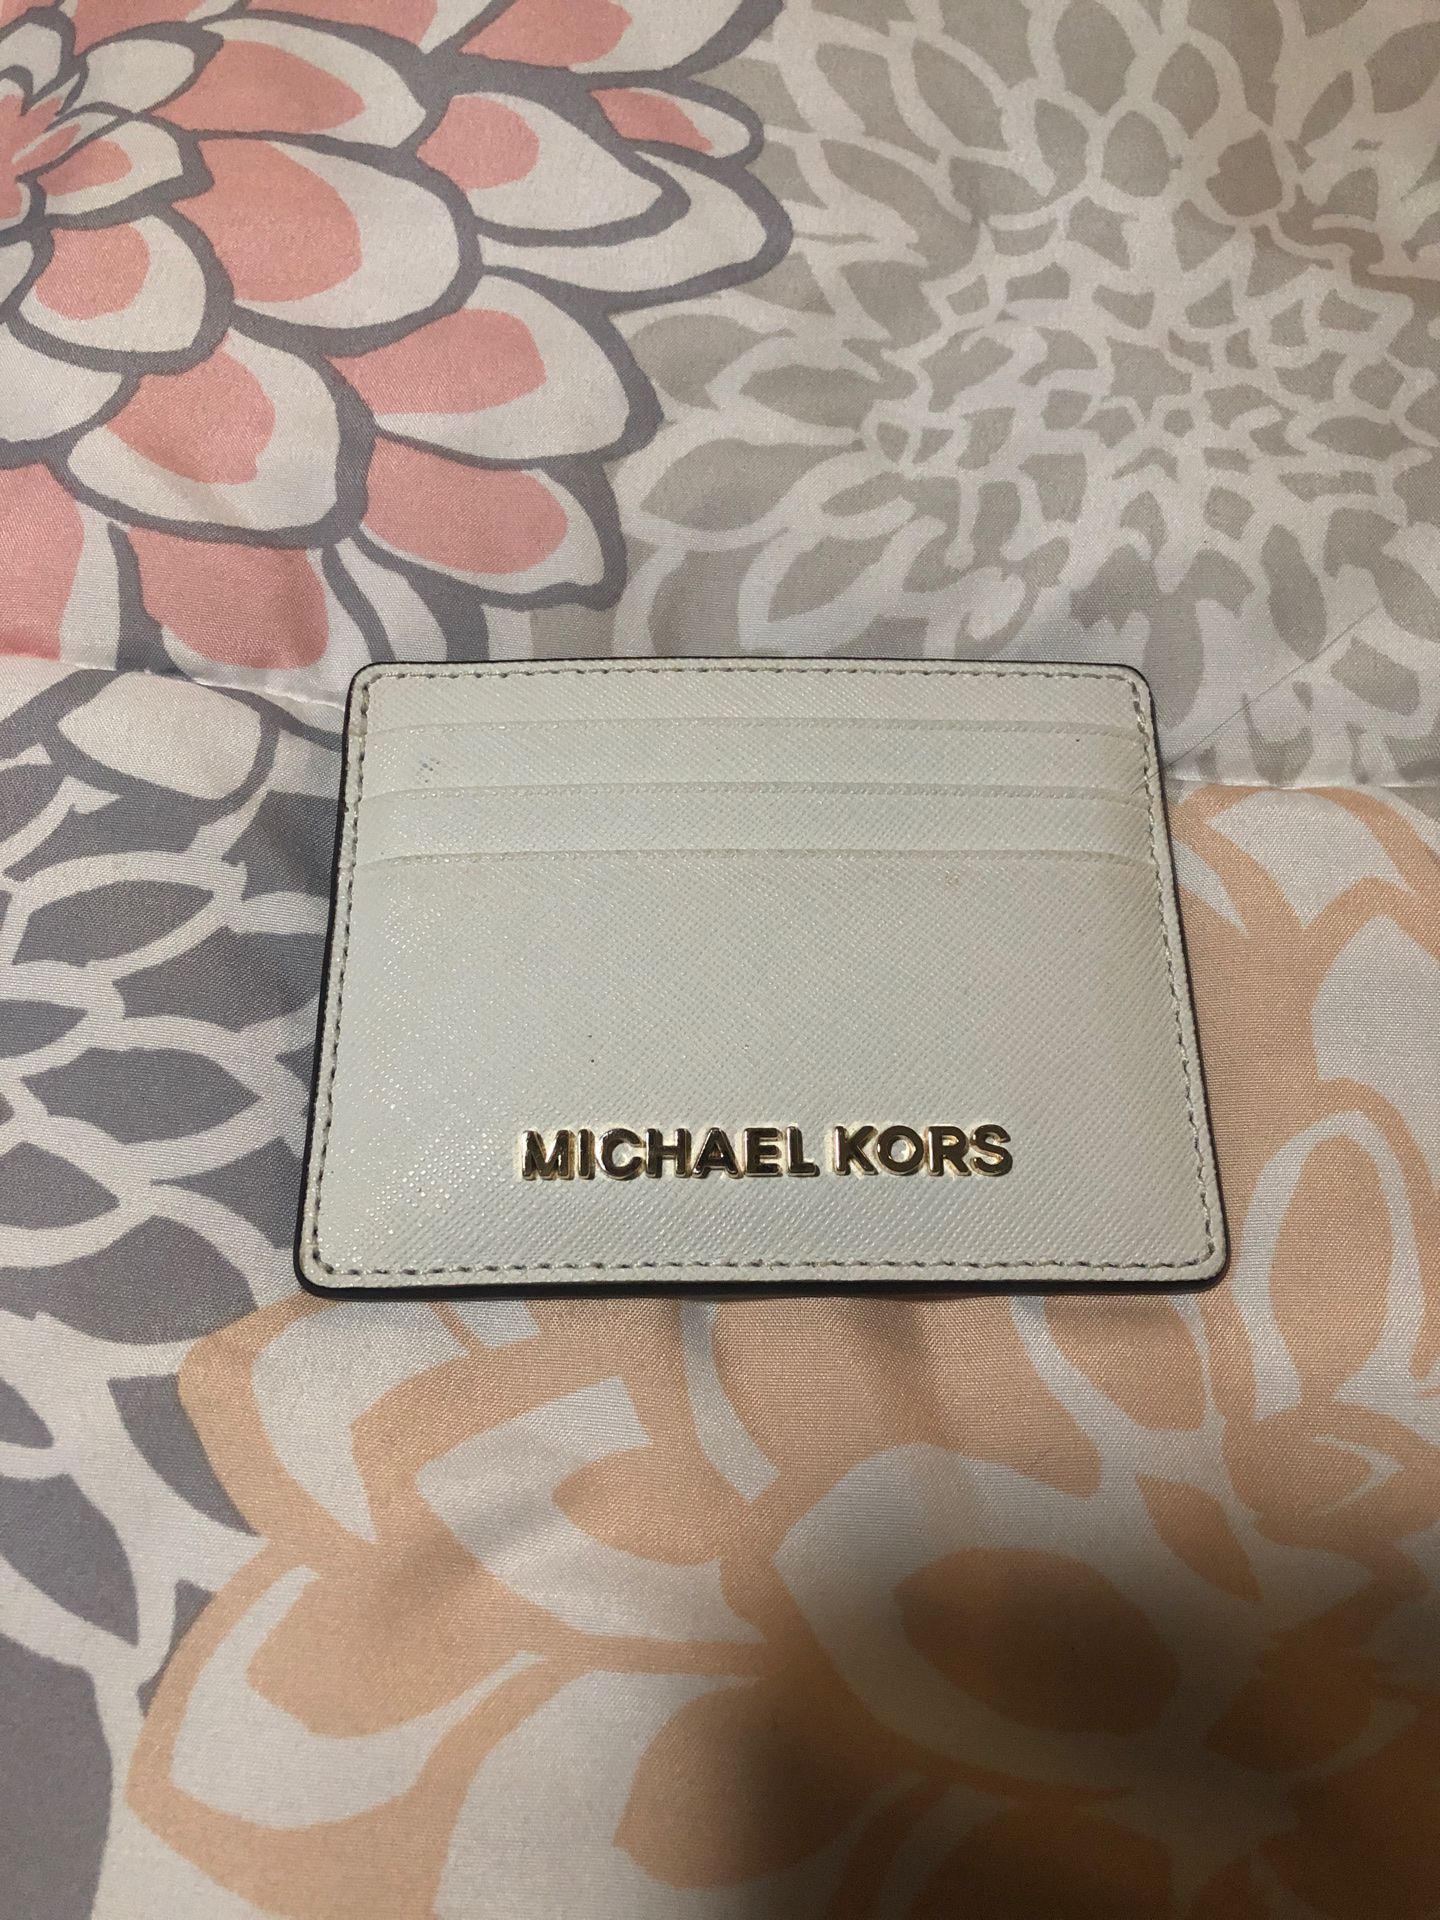 Michael Kors card holder